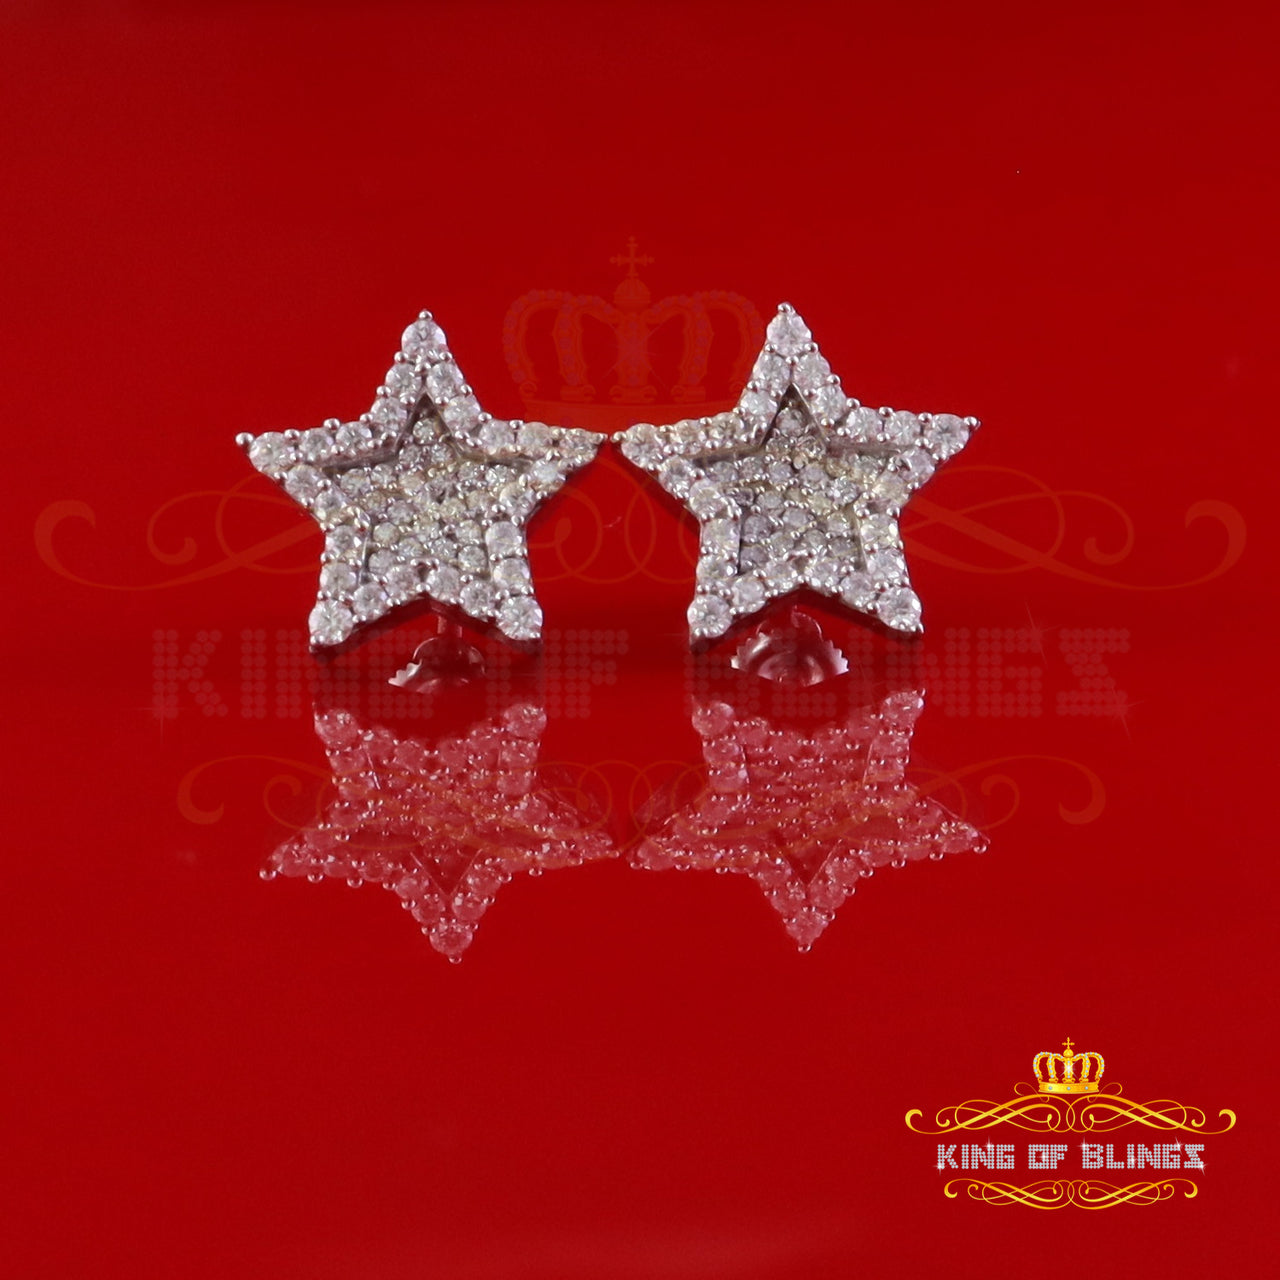 King of Bling's 925 White Silver 1.00ct VVS 'D' Moissanite Star Stud Earring Men's/Womens King of Blings